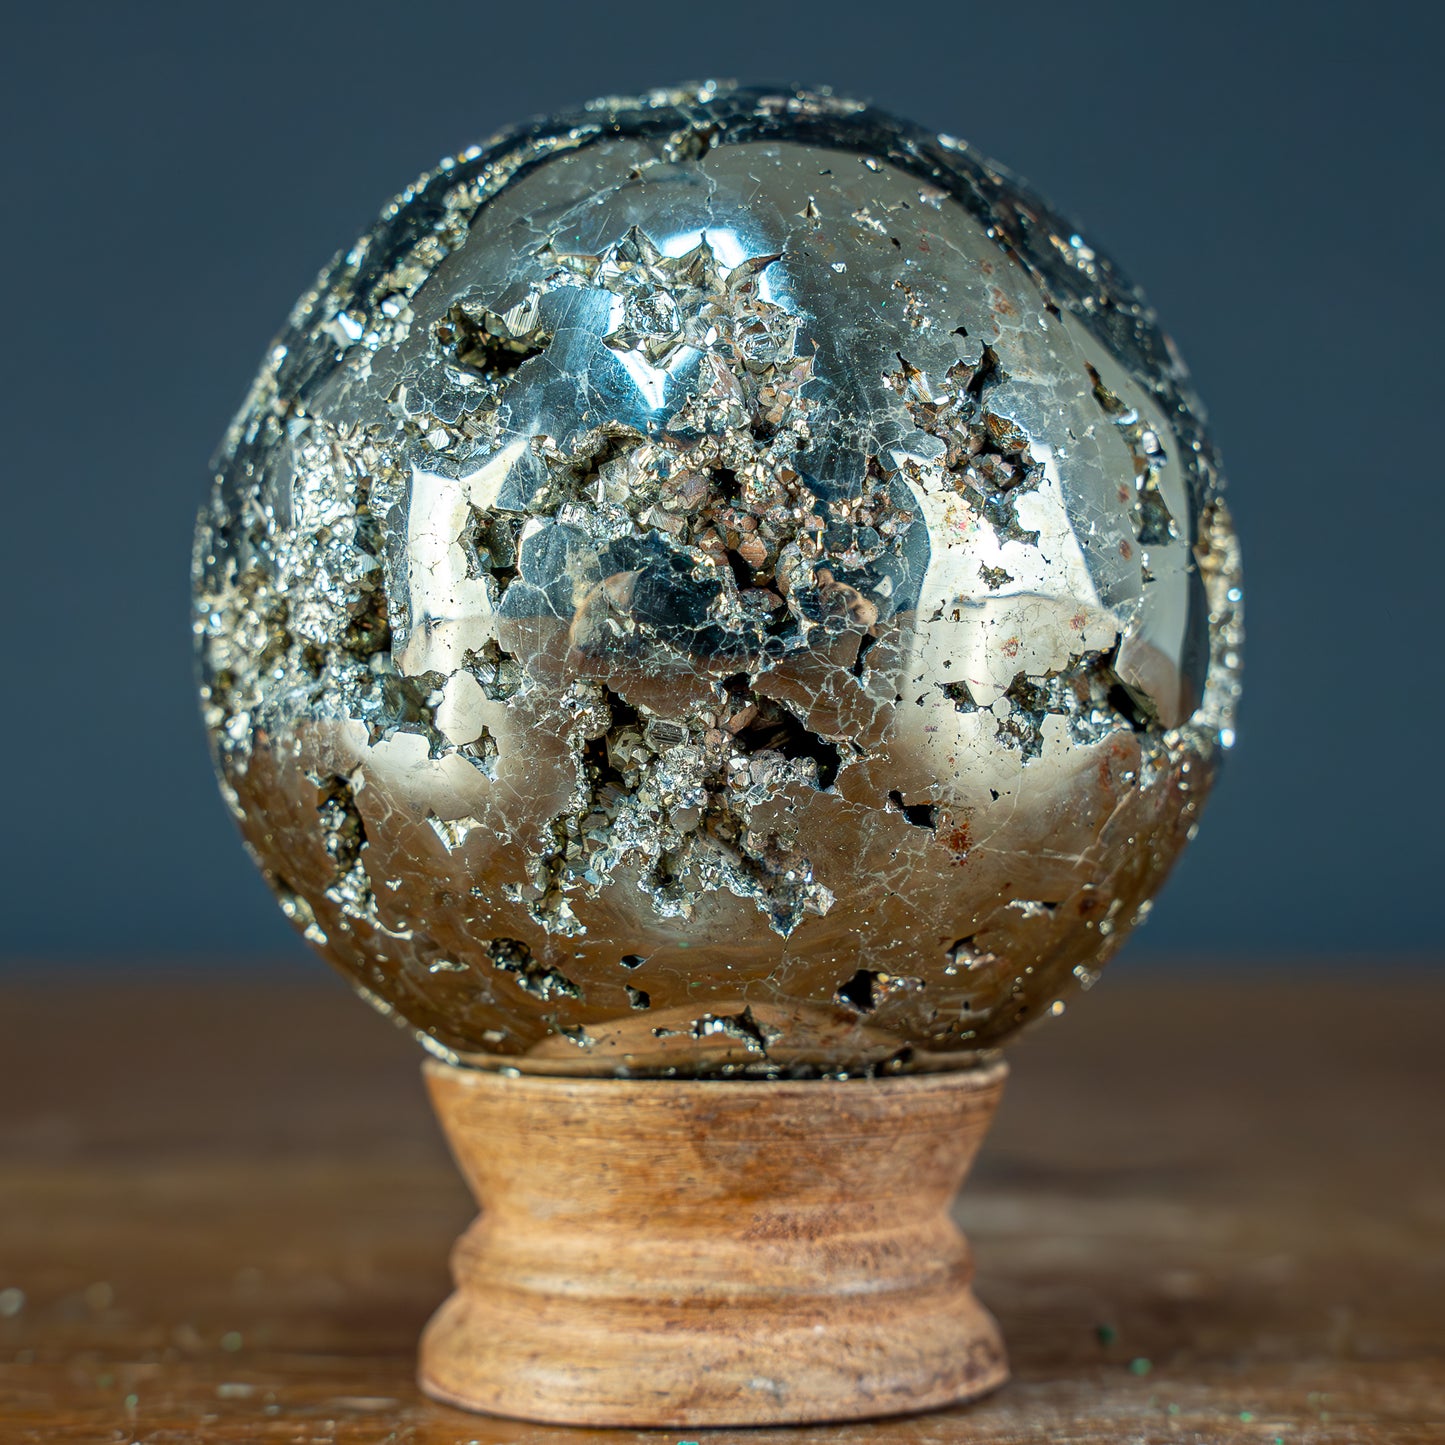 Natürliche Dekorative Pyrit Kugel / Druse - 1003,72g - 78mm